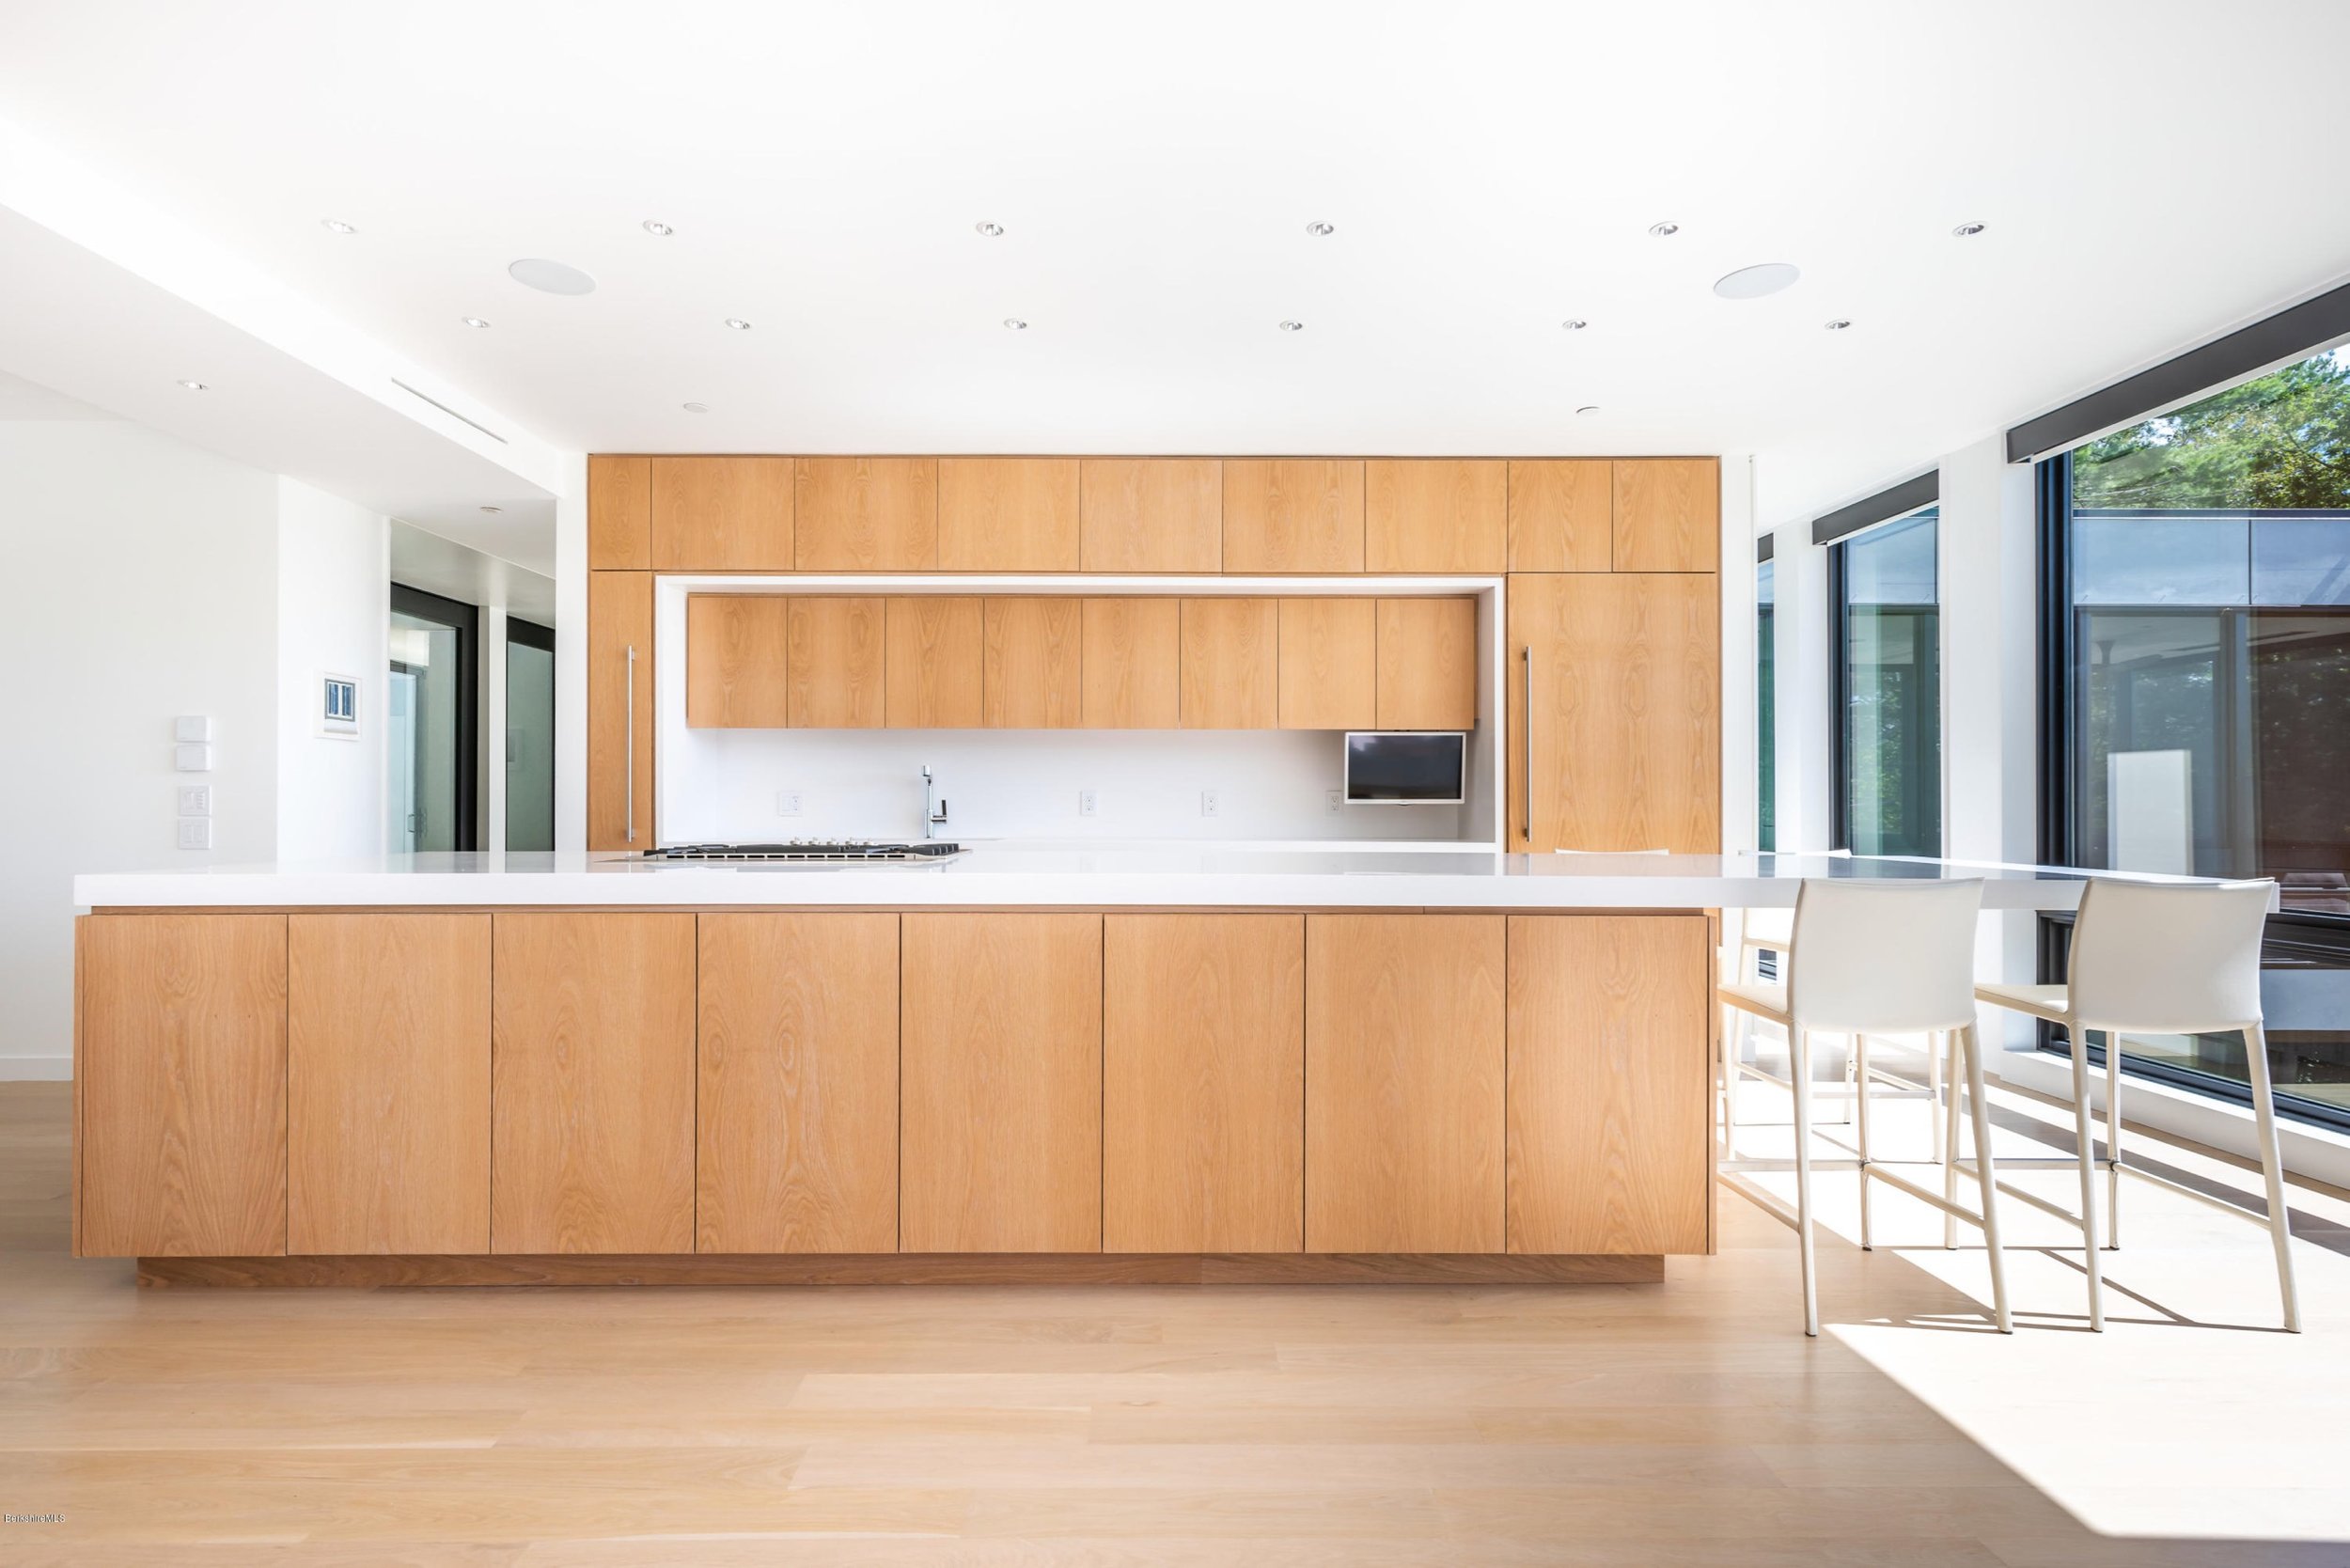 10-re4a-resolution-4-architecture-modern-modular-prefab-west-stockbridge-kitchen.jpg